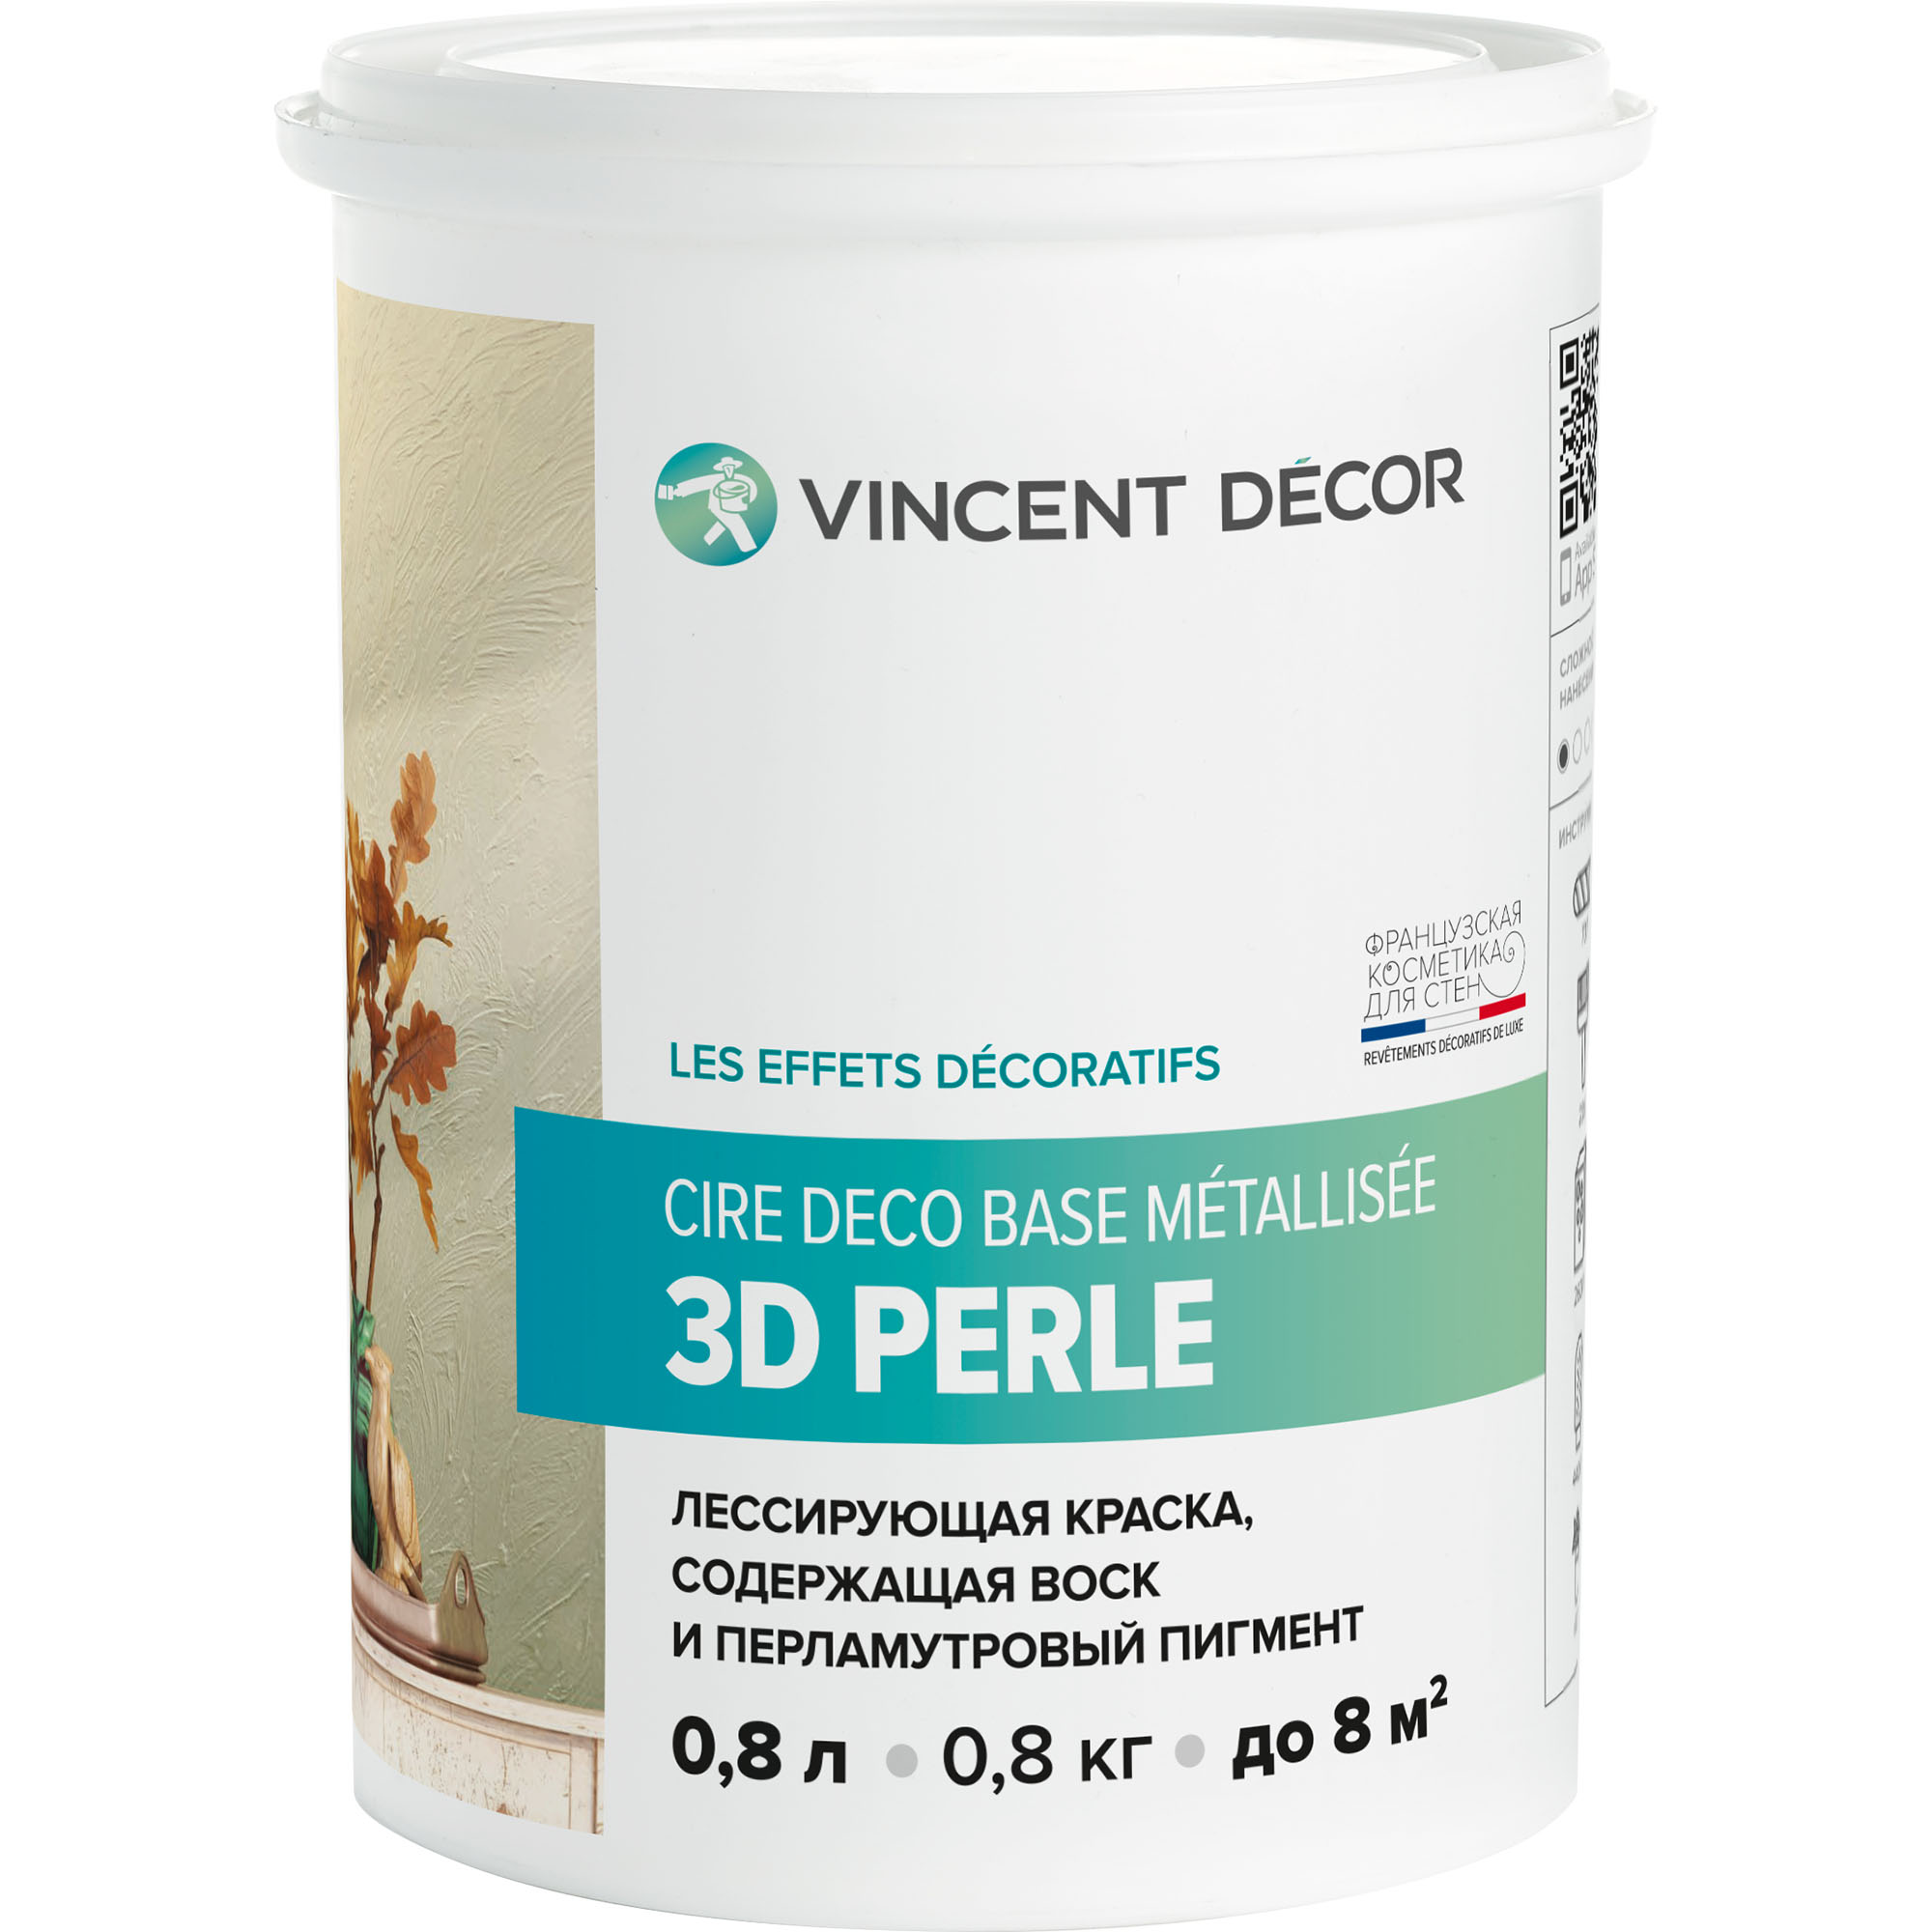 Краска лессирующая для декоративных покрытий Vincent Decor Cire deco base Metallisee 3D Perle золотистый перламутр 0,8 л грунтовка для декоративных покрытий vincent decor sous couche 4 5 л